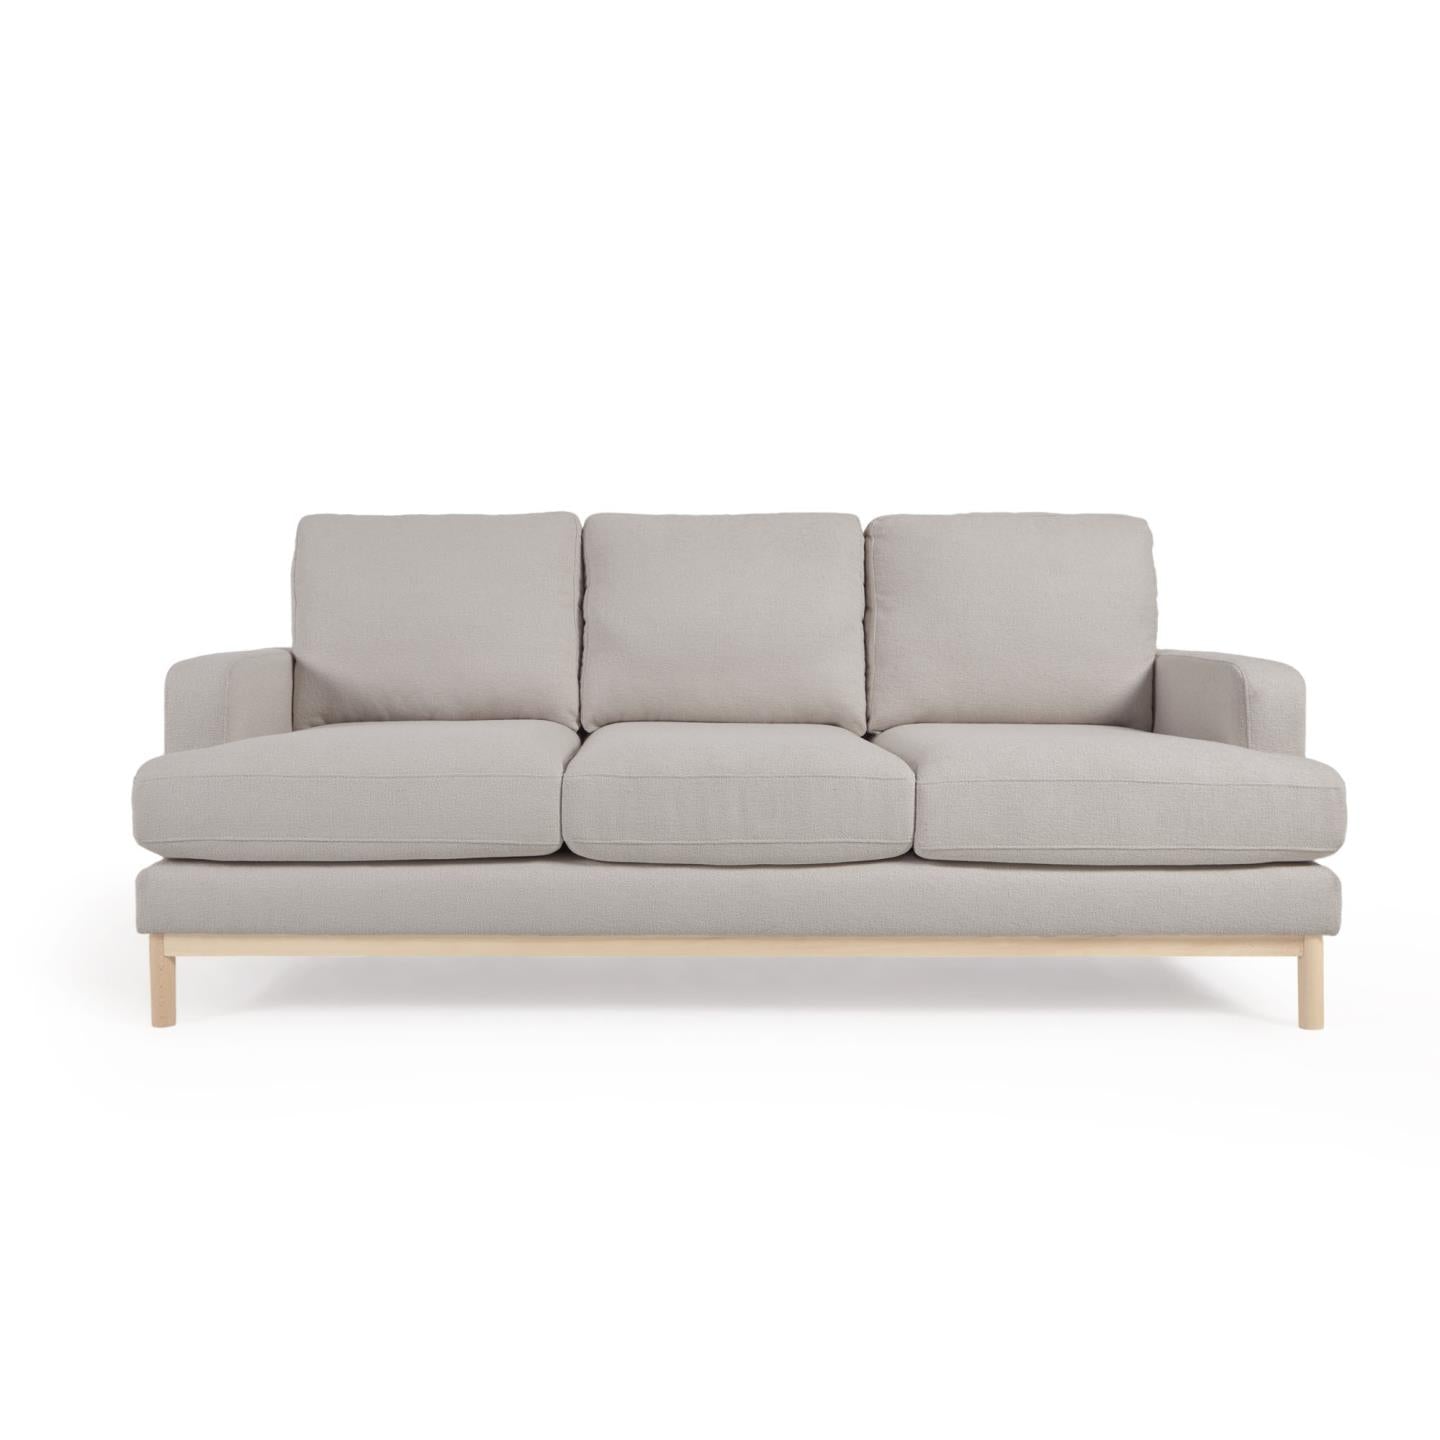 Mihaela 3 seater sofa in grey fleece, 203 cm